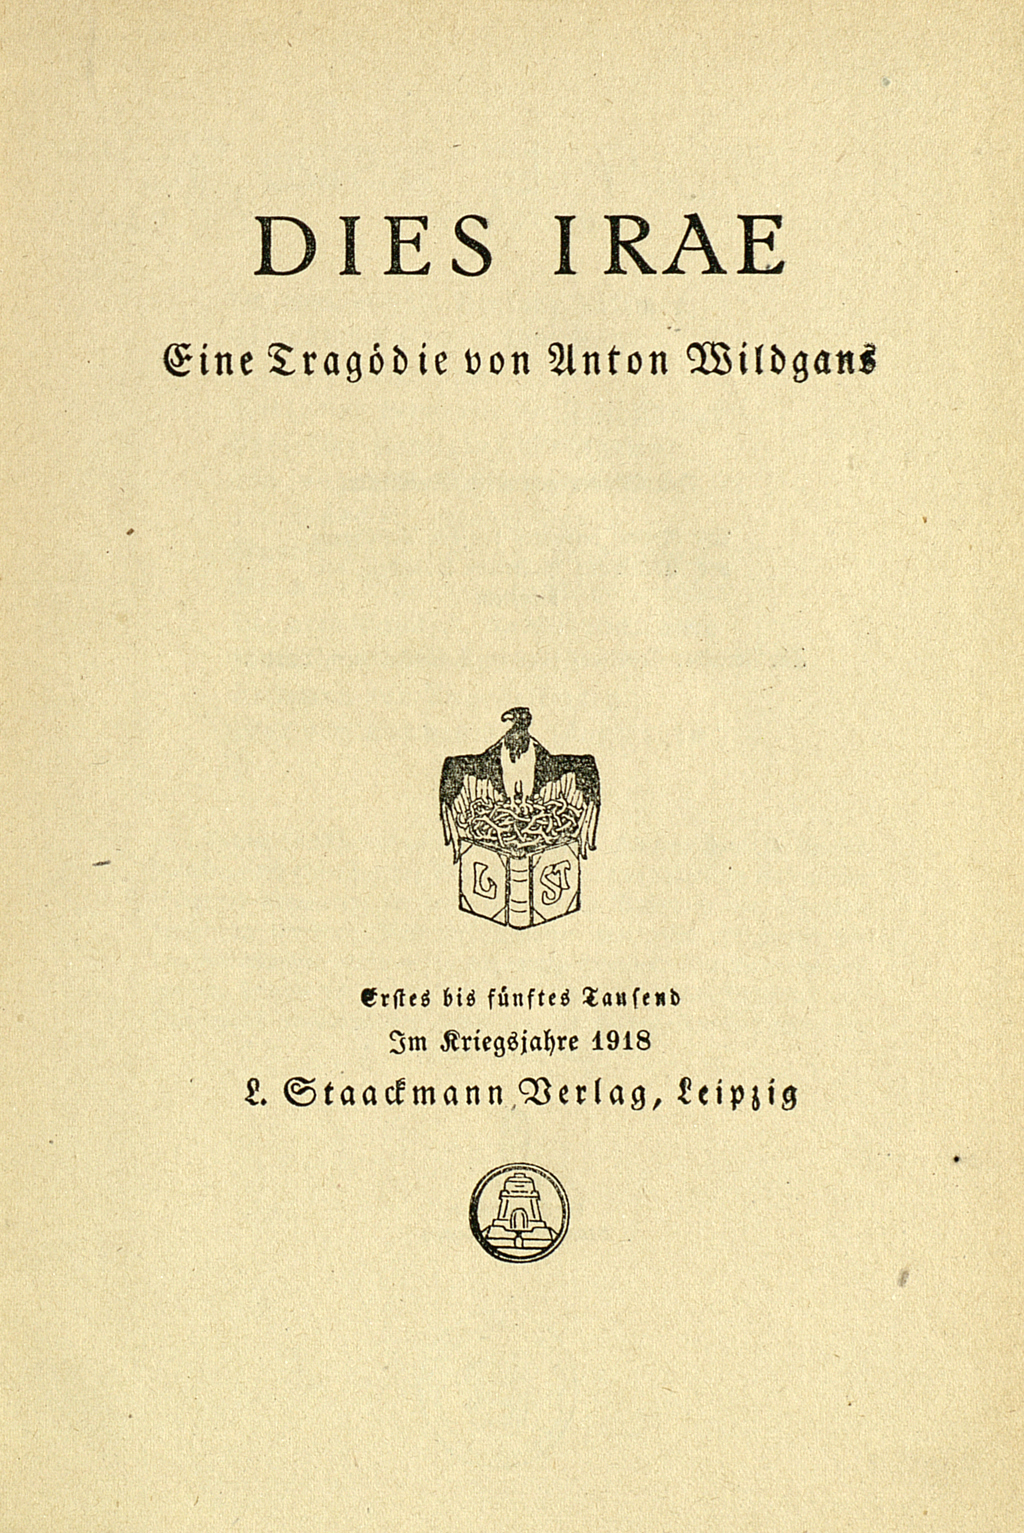 Zu sehen ist das Titelblatt der Erstausgabe der Tragödie "Dies irae" von Anton Wildgans aus dem Jahr 1918.